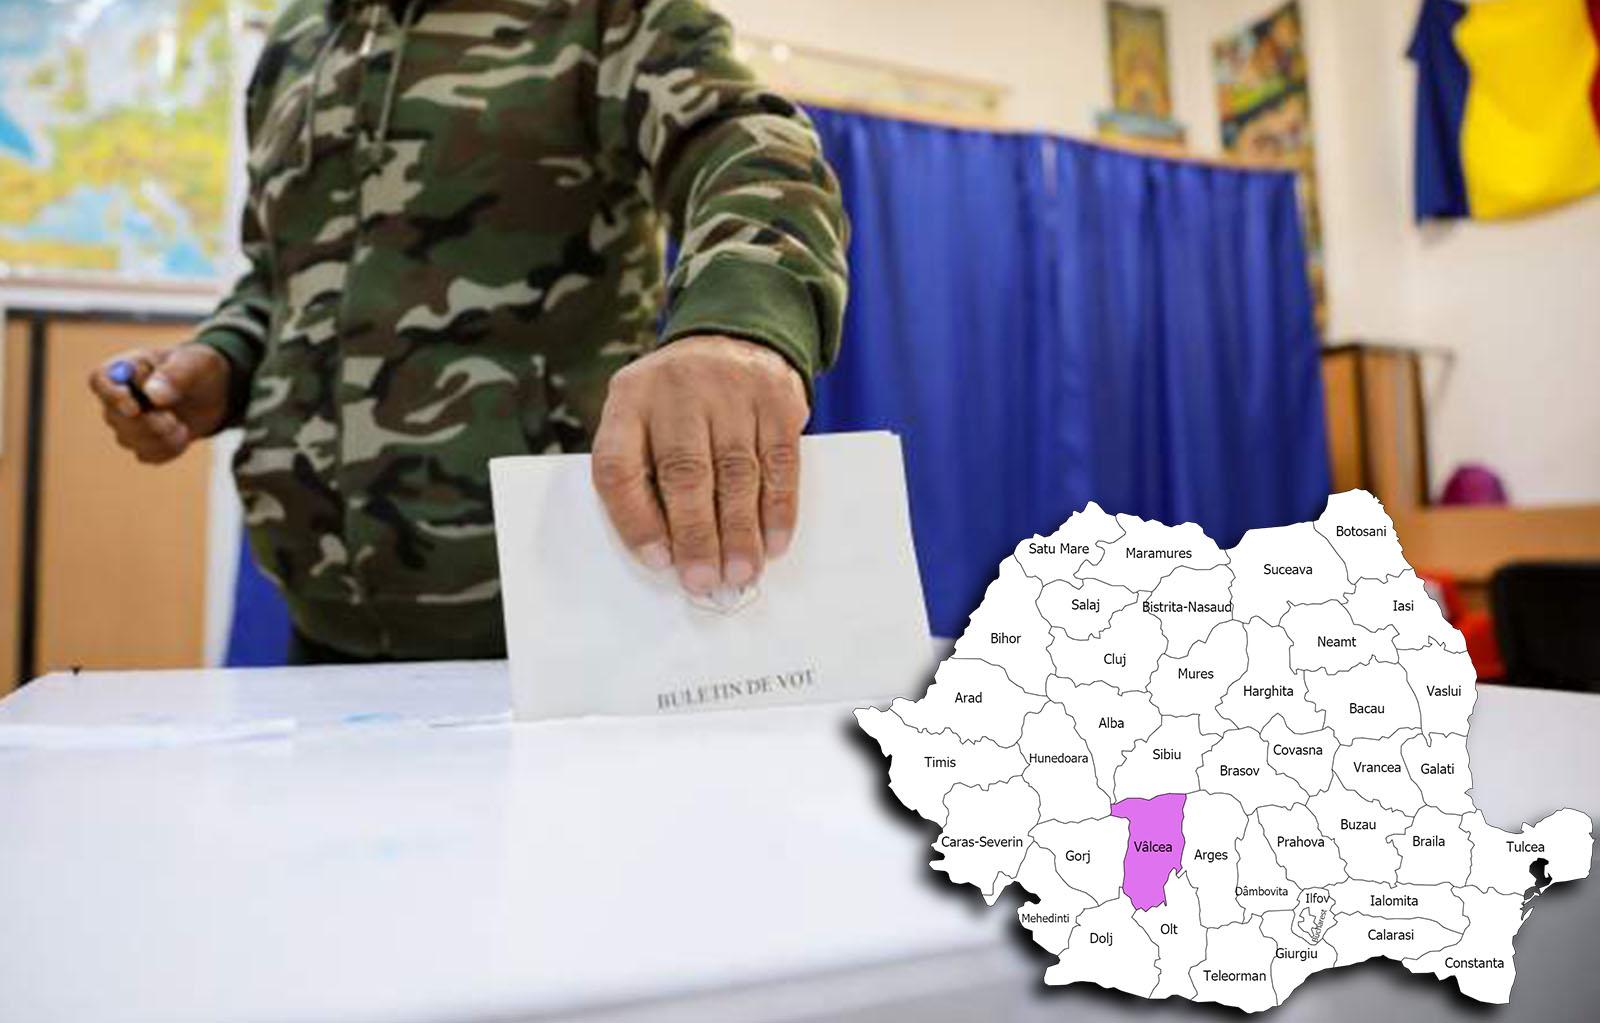 Rezultate alegeri parlamentare 2020 în județul Vâlcea. Cine câștigă alegerile pentru Senat și Camera Deputaților